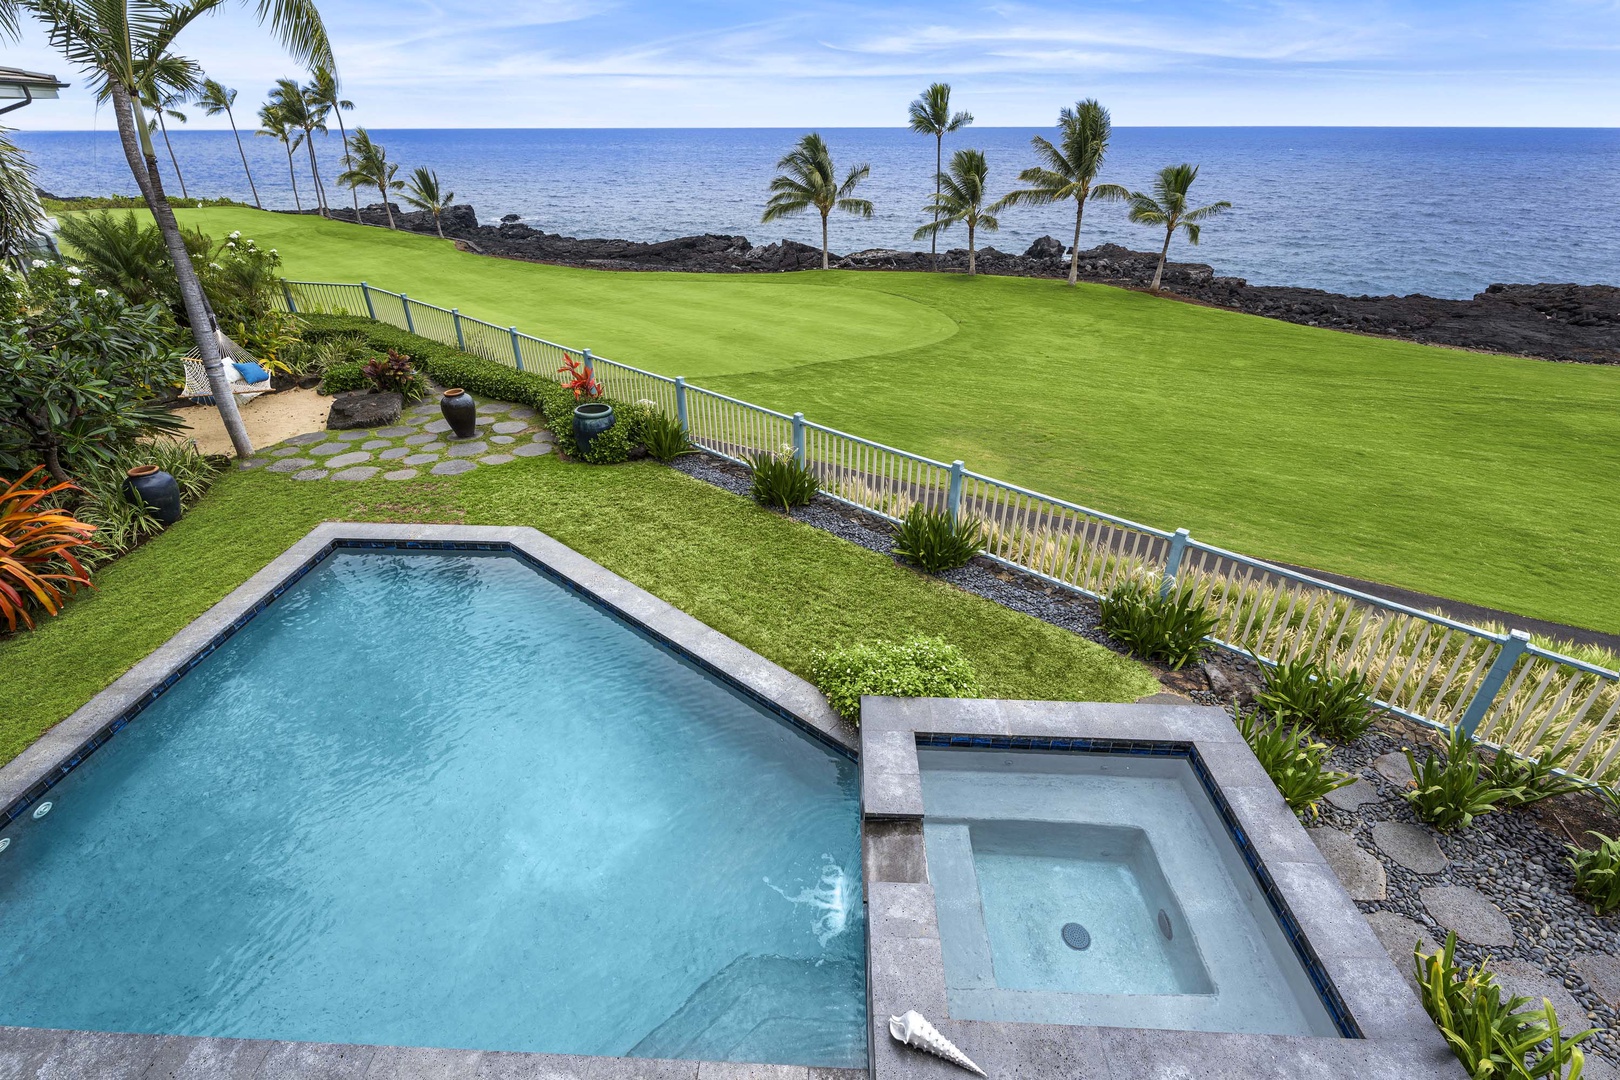 Kailua Kona Vacation Rentals, Holua Kai #20 - View from the pool on the Primary Lanai